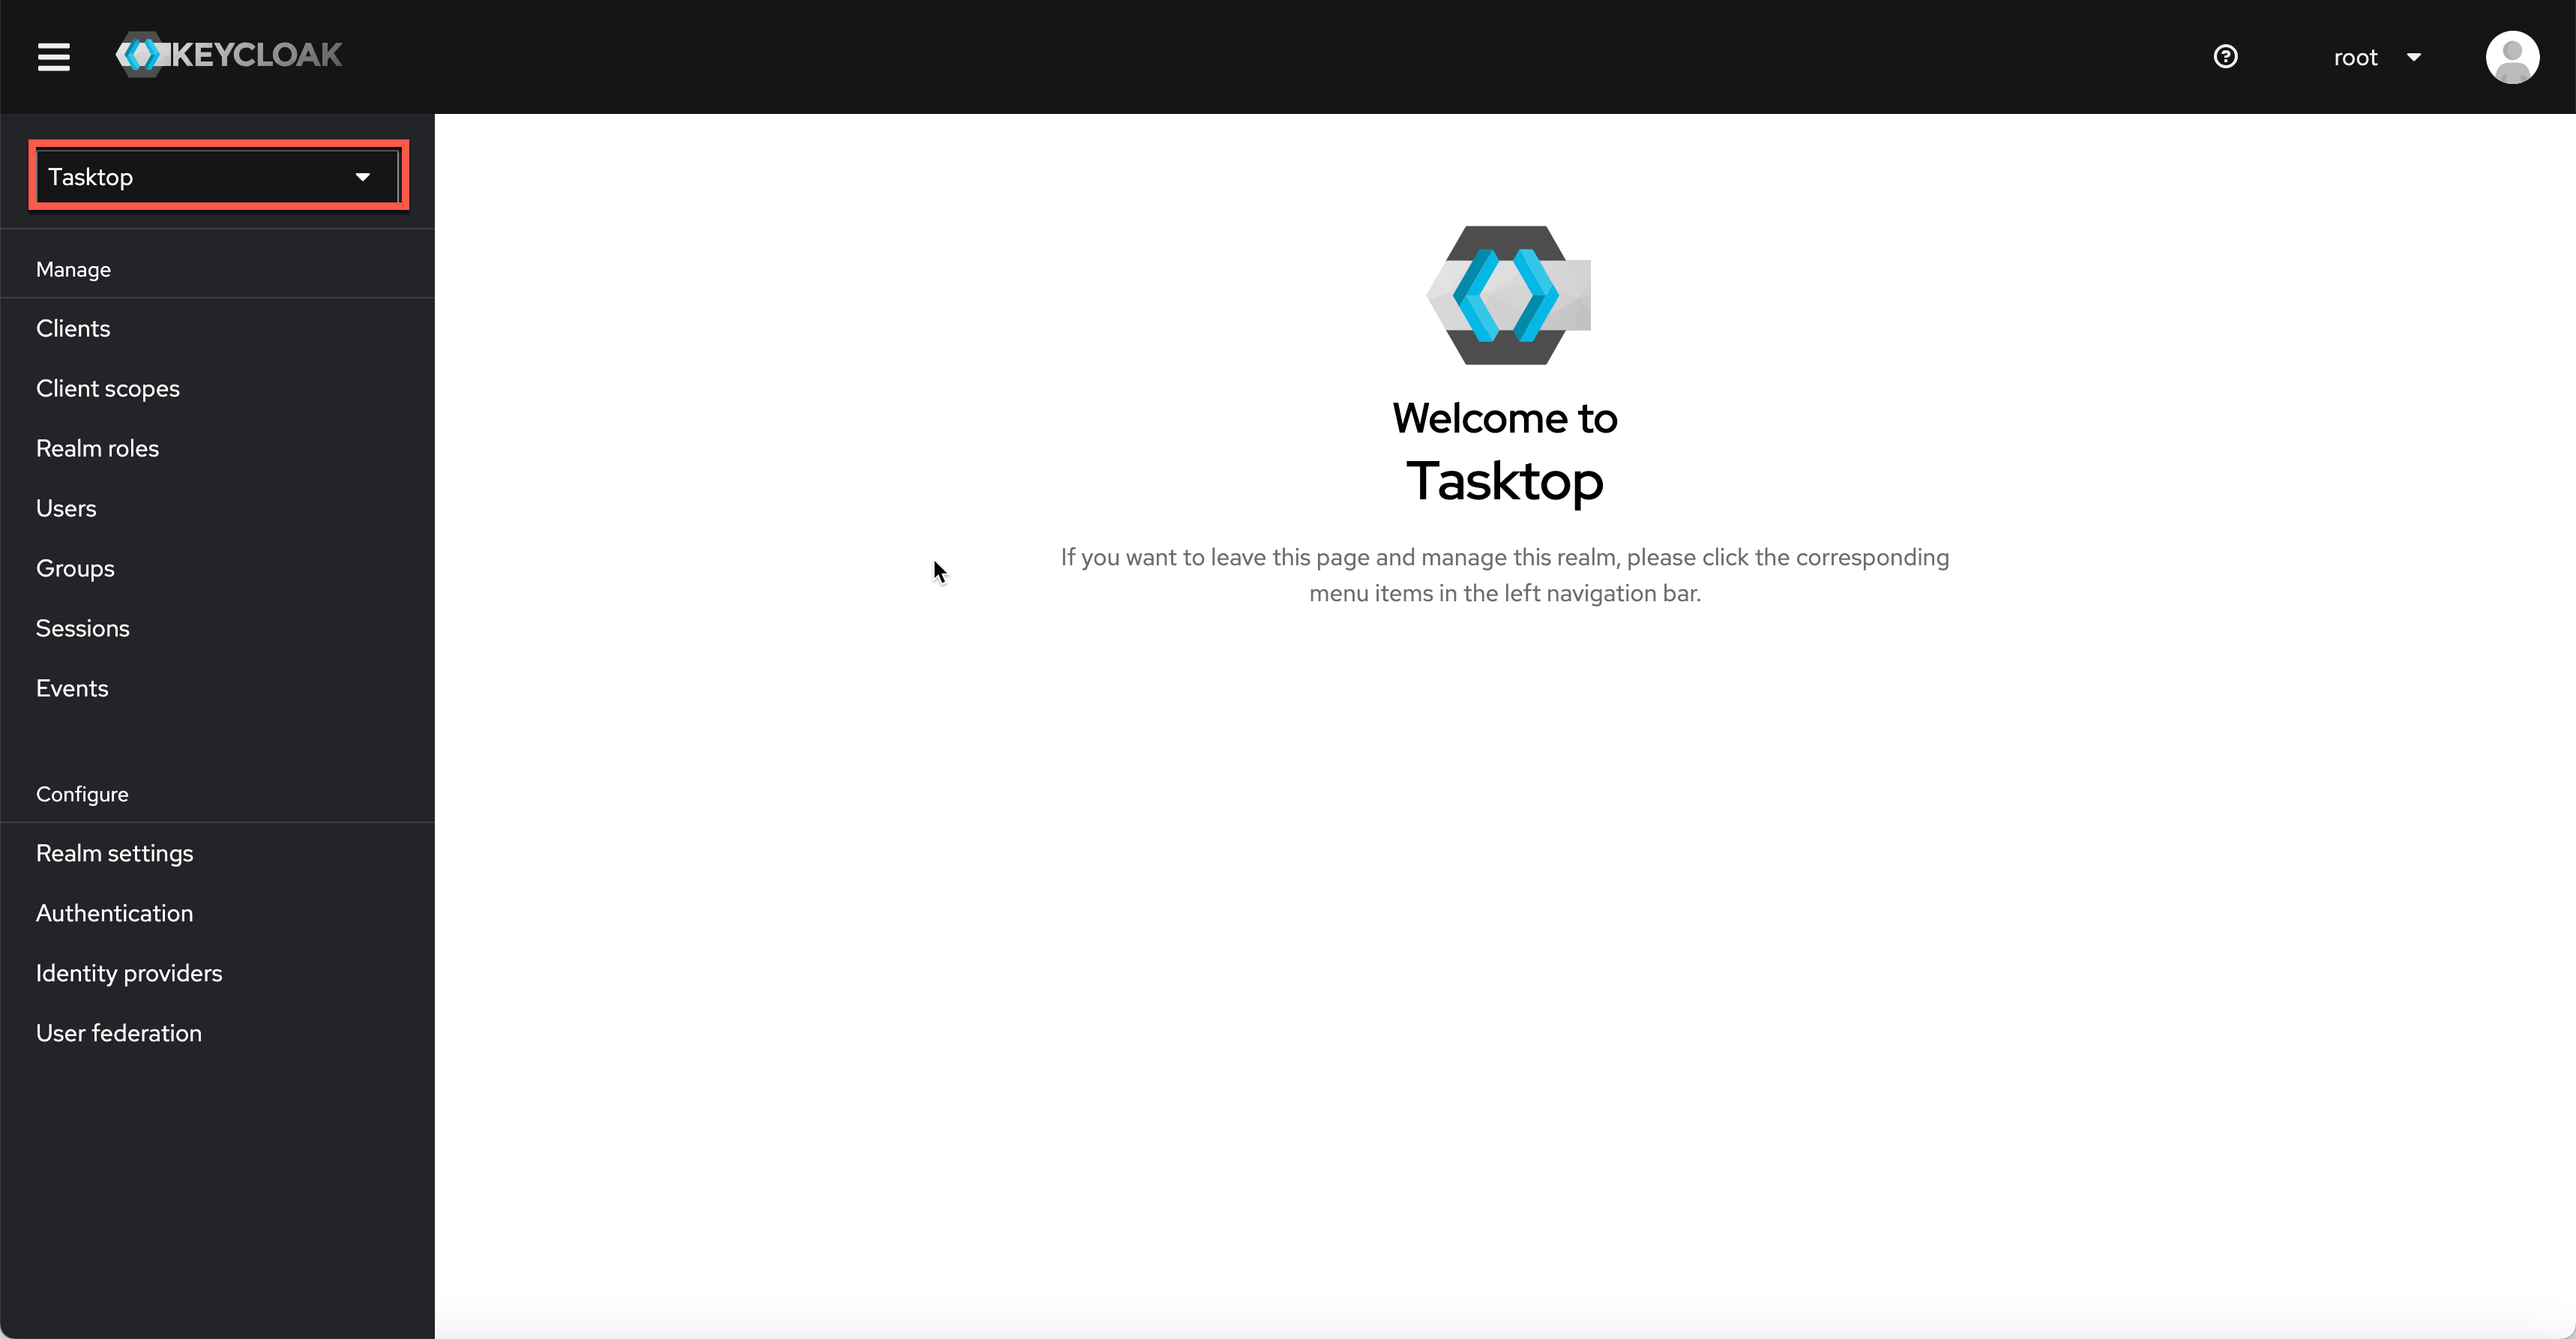 Ensure 'Tasktop' is selected